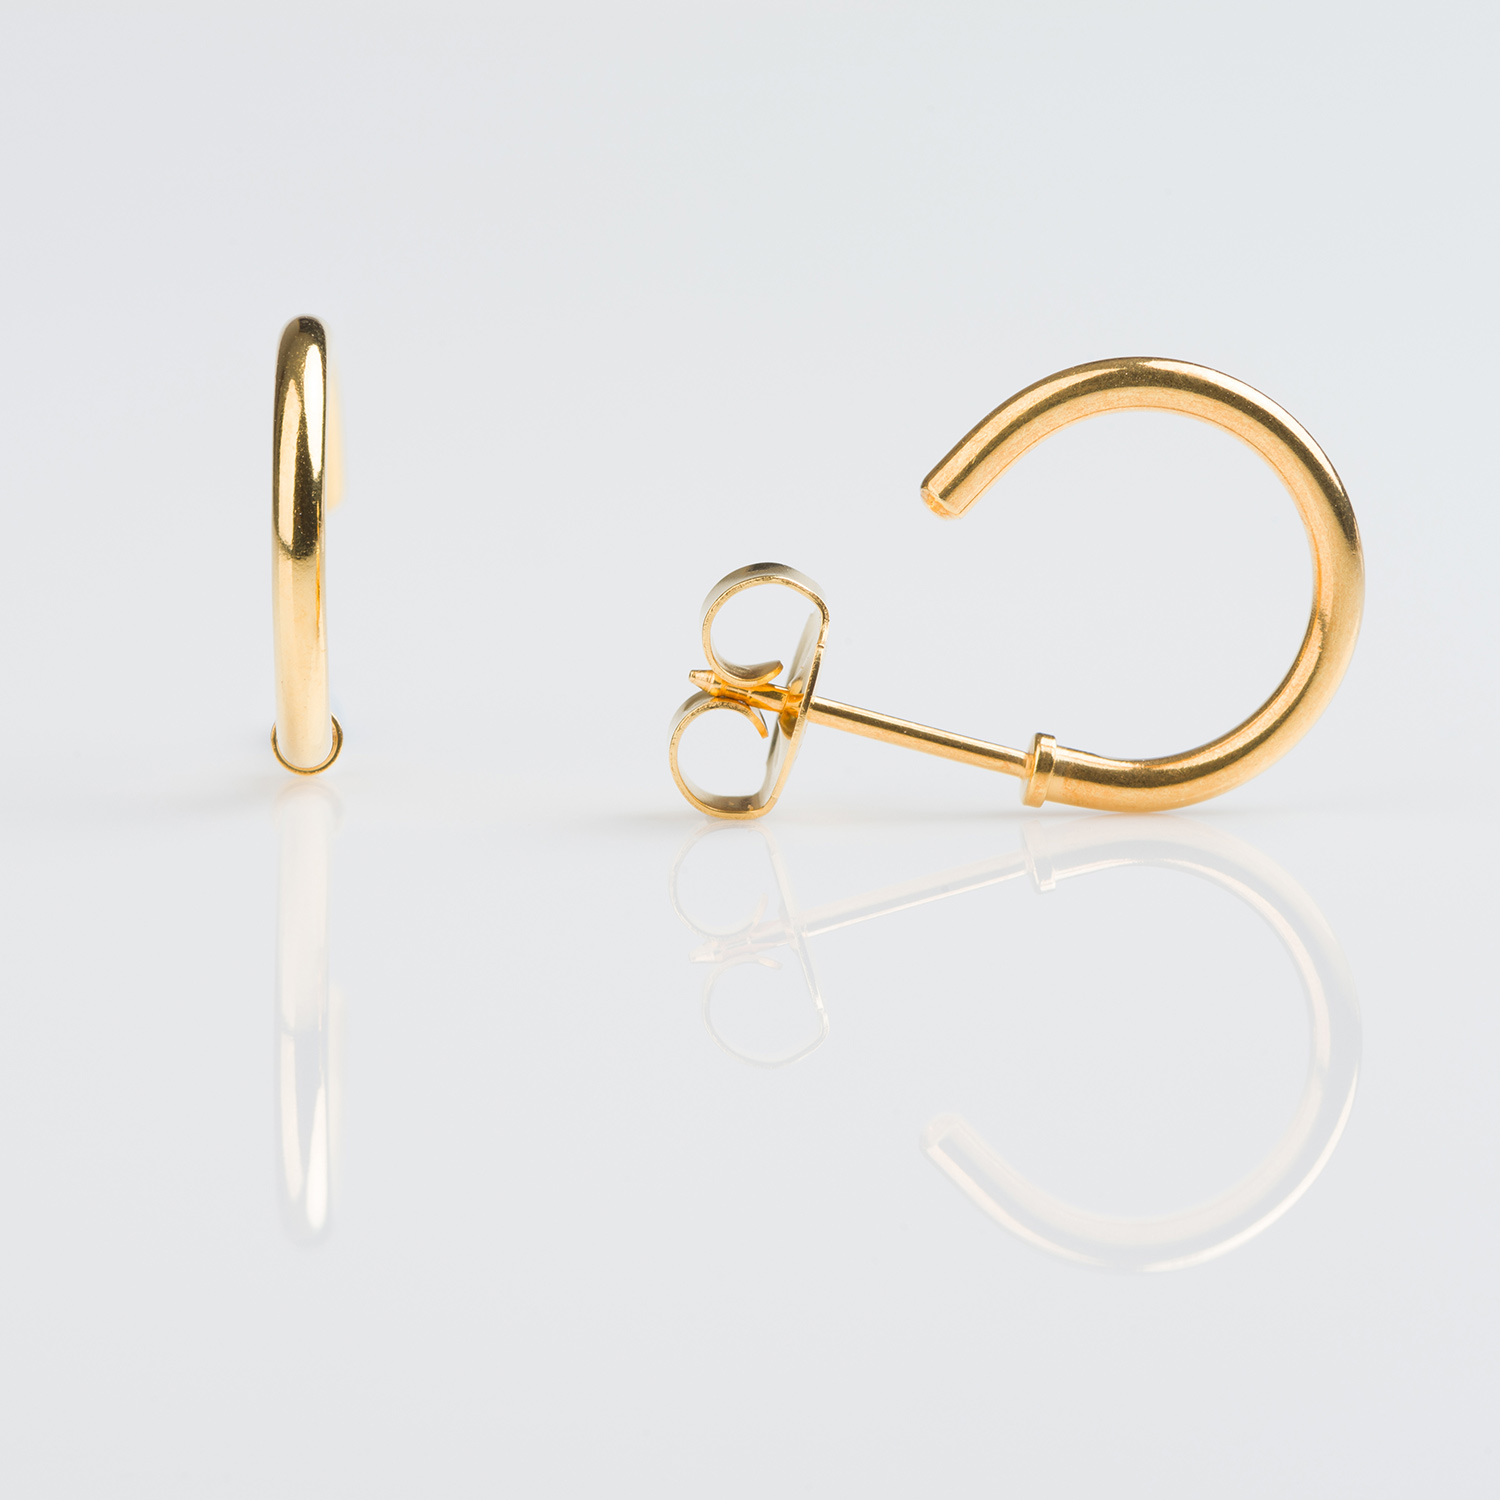 7511-0921 – Studex Gold Plated Piercing Hoop Piercing Earrings